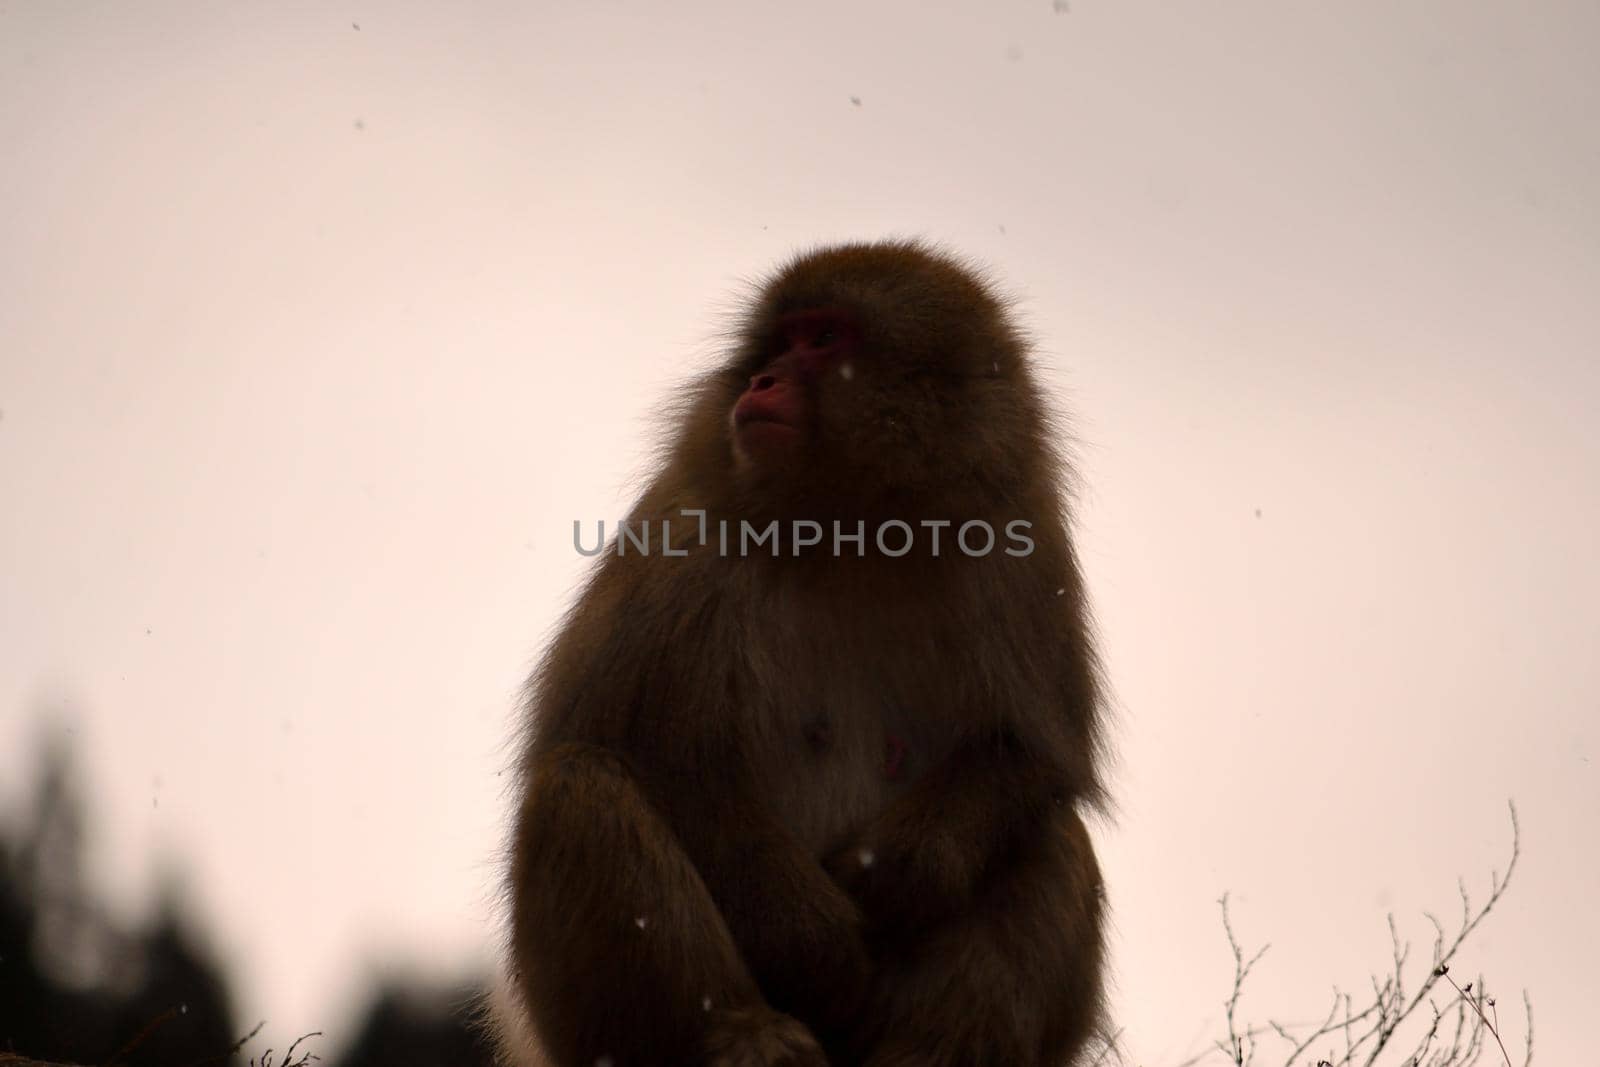 Closeup of a japanese macaque during the winter season, Jigokudani